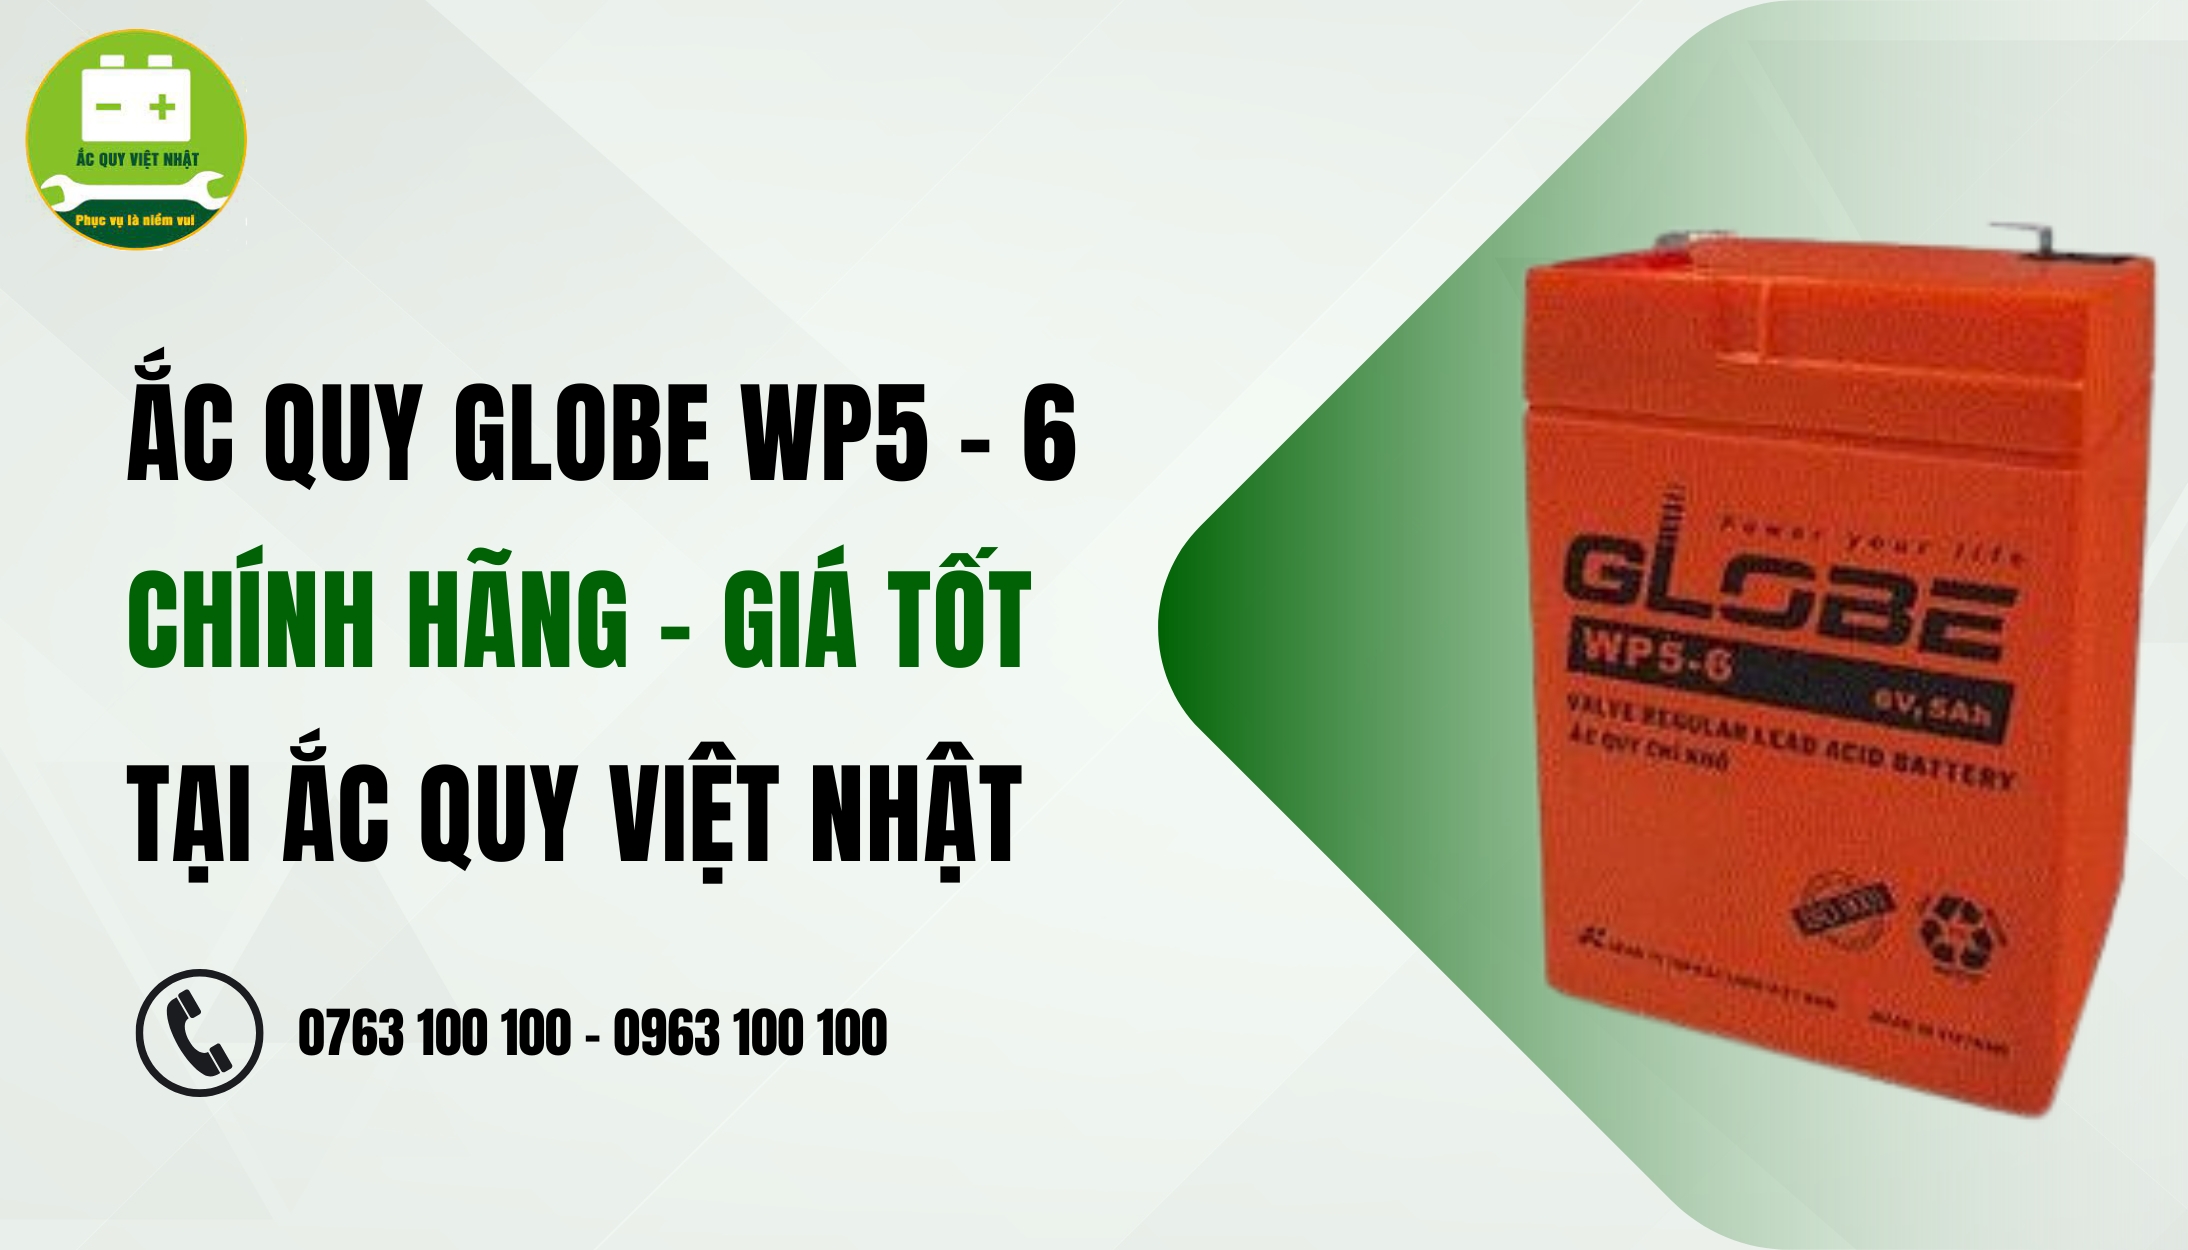 Mua acquy Globe WP5 -6 tại Việt Nhật